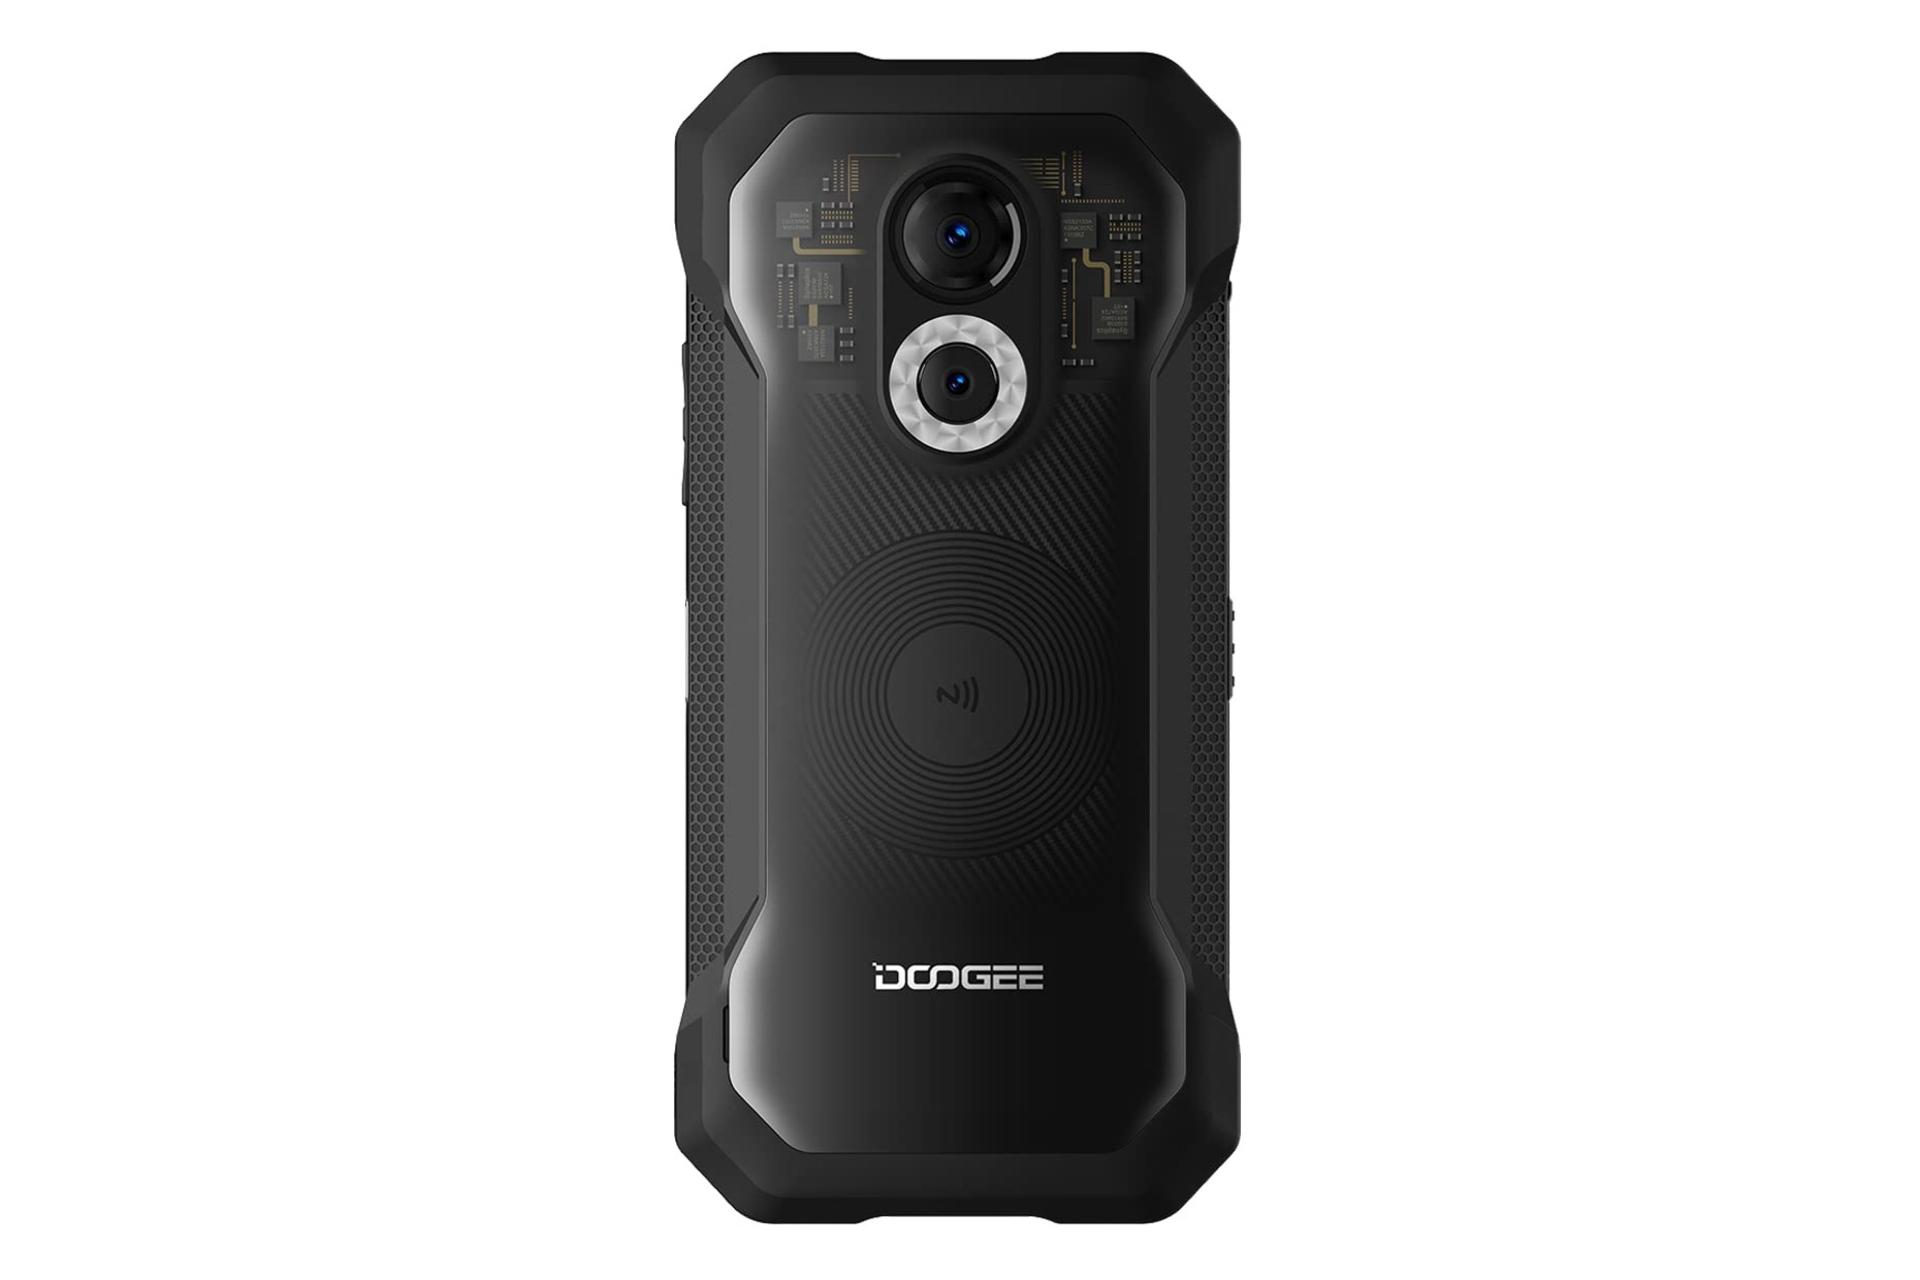 پنل پشت گوشی موبایل S61 دوجی / Doogee S61 شفاف